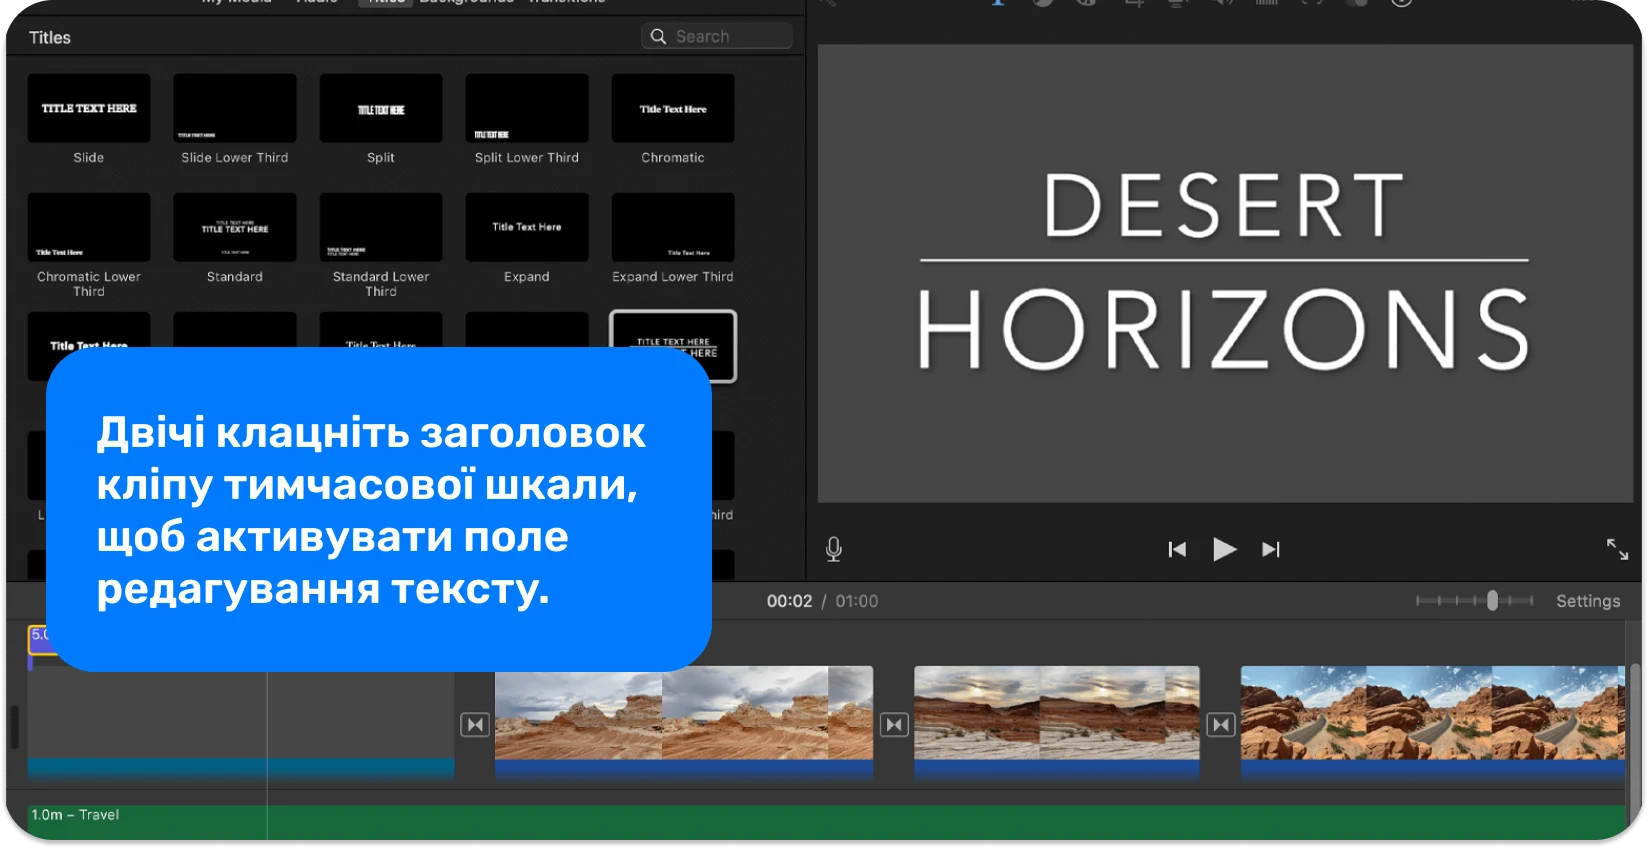 Інтерфейс iMovie Titles відображає різноманітні стилі та формати тексту для додавання професійних титрів до відеопроектів.
